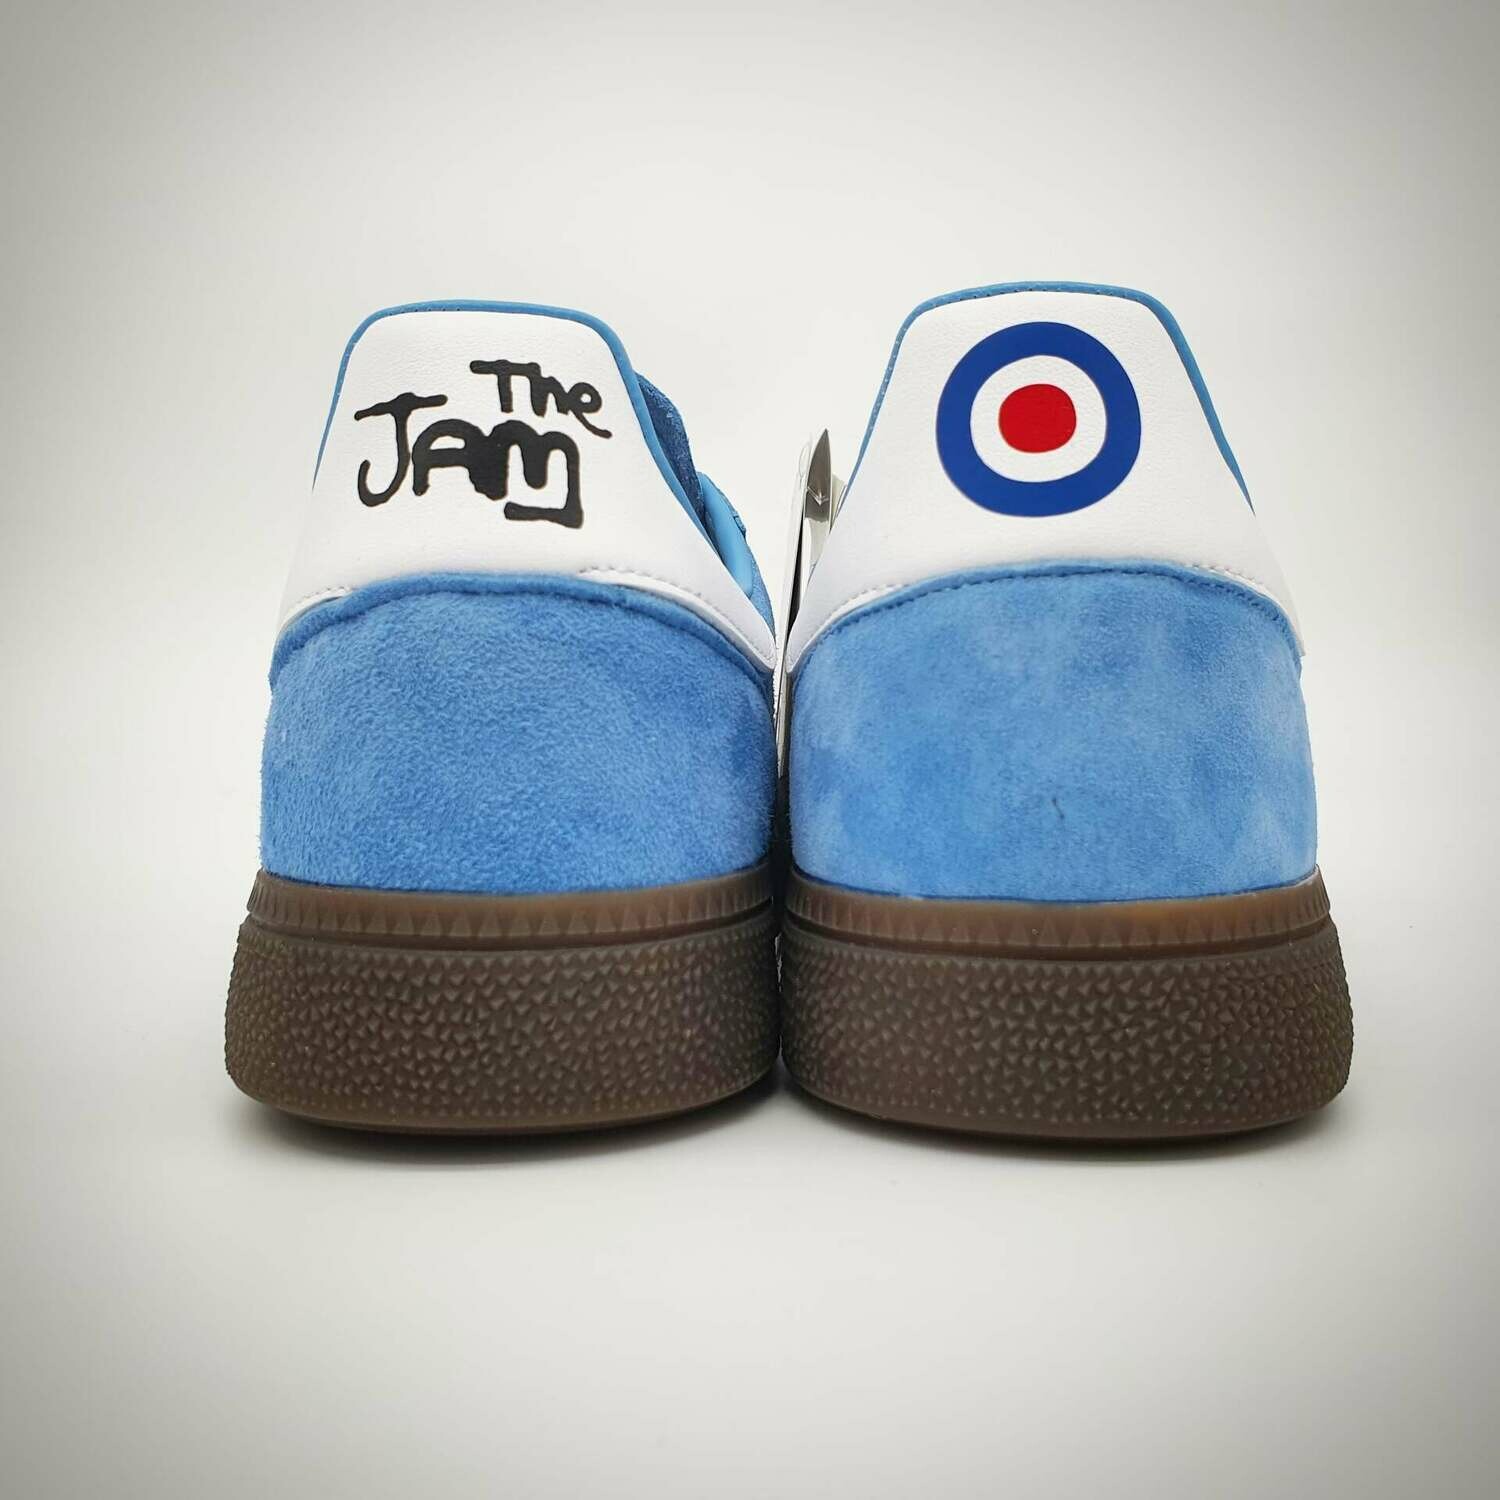 Paul Weller - The Jam - adidas custom